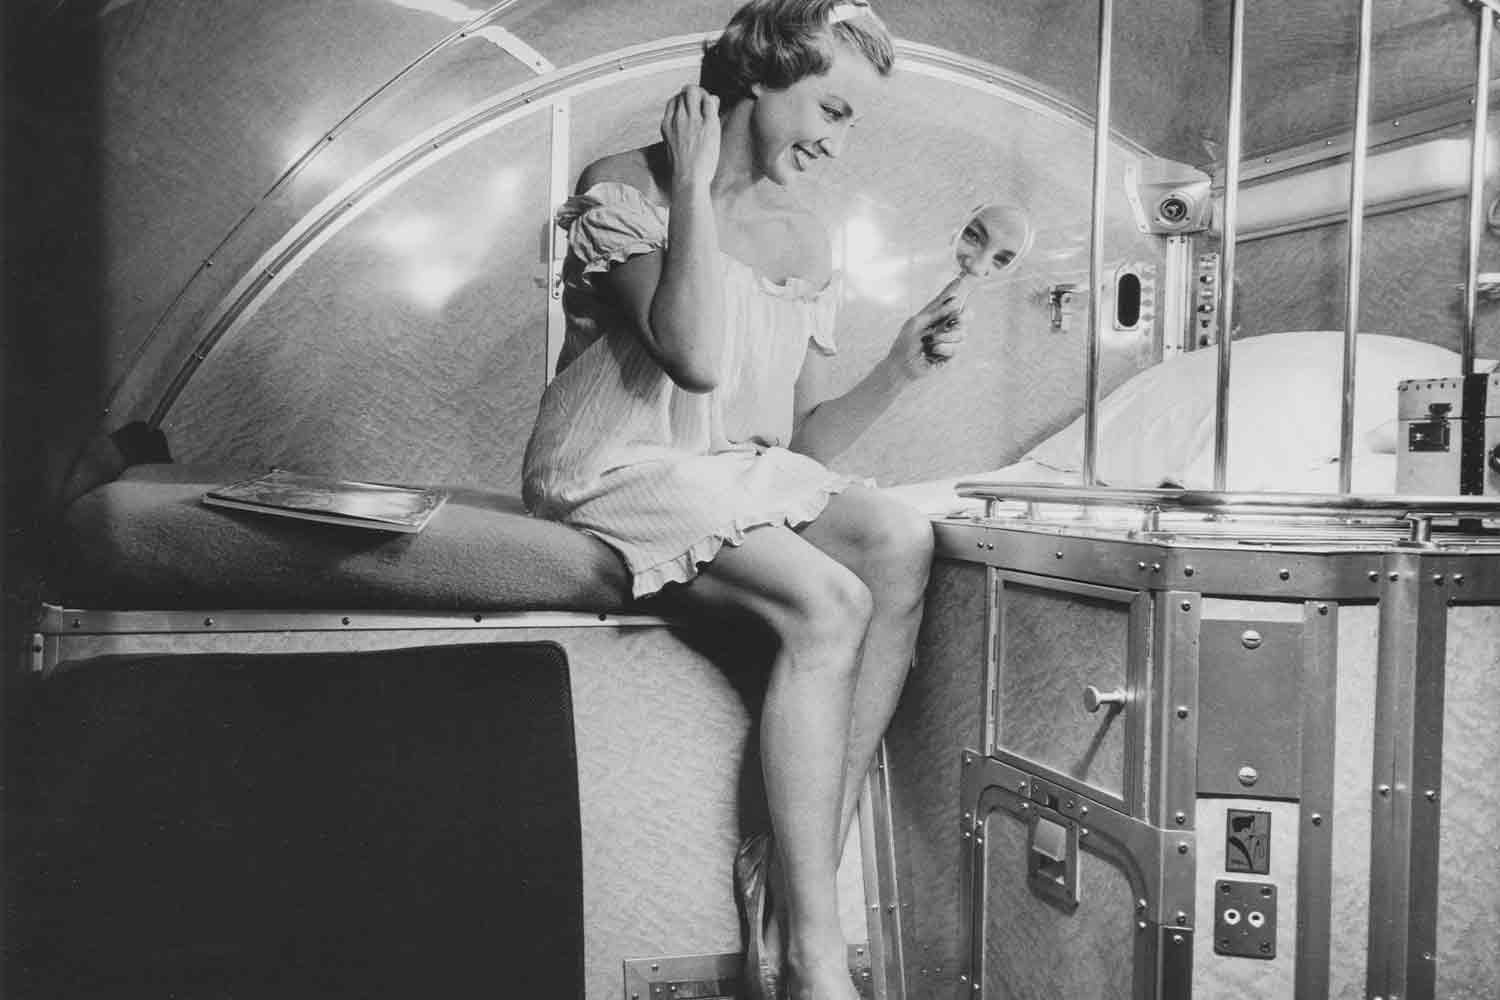 Fotografia pubblicitaria per la promozione dei nuovi vagoni letto P, iniziale di Pillepich, progettista e ingegnere capo dei servizi tecnici della Compagnie (1959) ©Fonds de dotation Orient Express